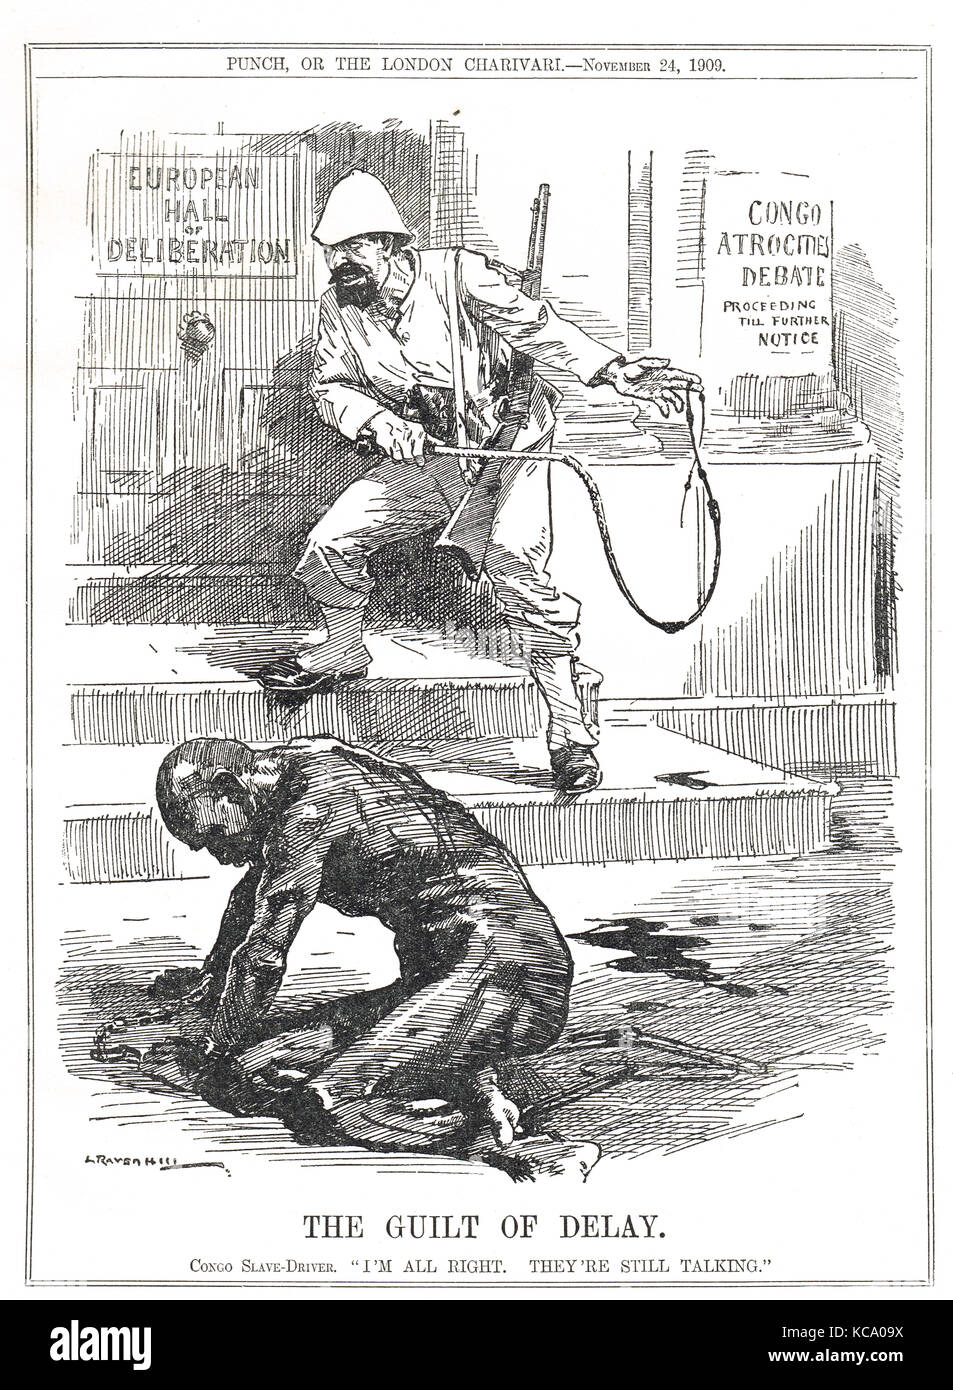 La culpa del retraso, la esclavitud en el Congo Belga, Punch cartoon, 1909 Foto de stock